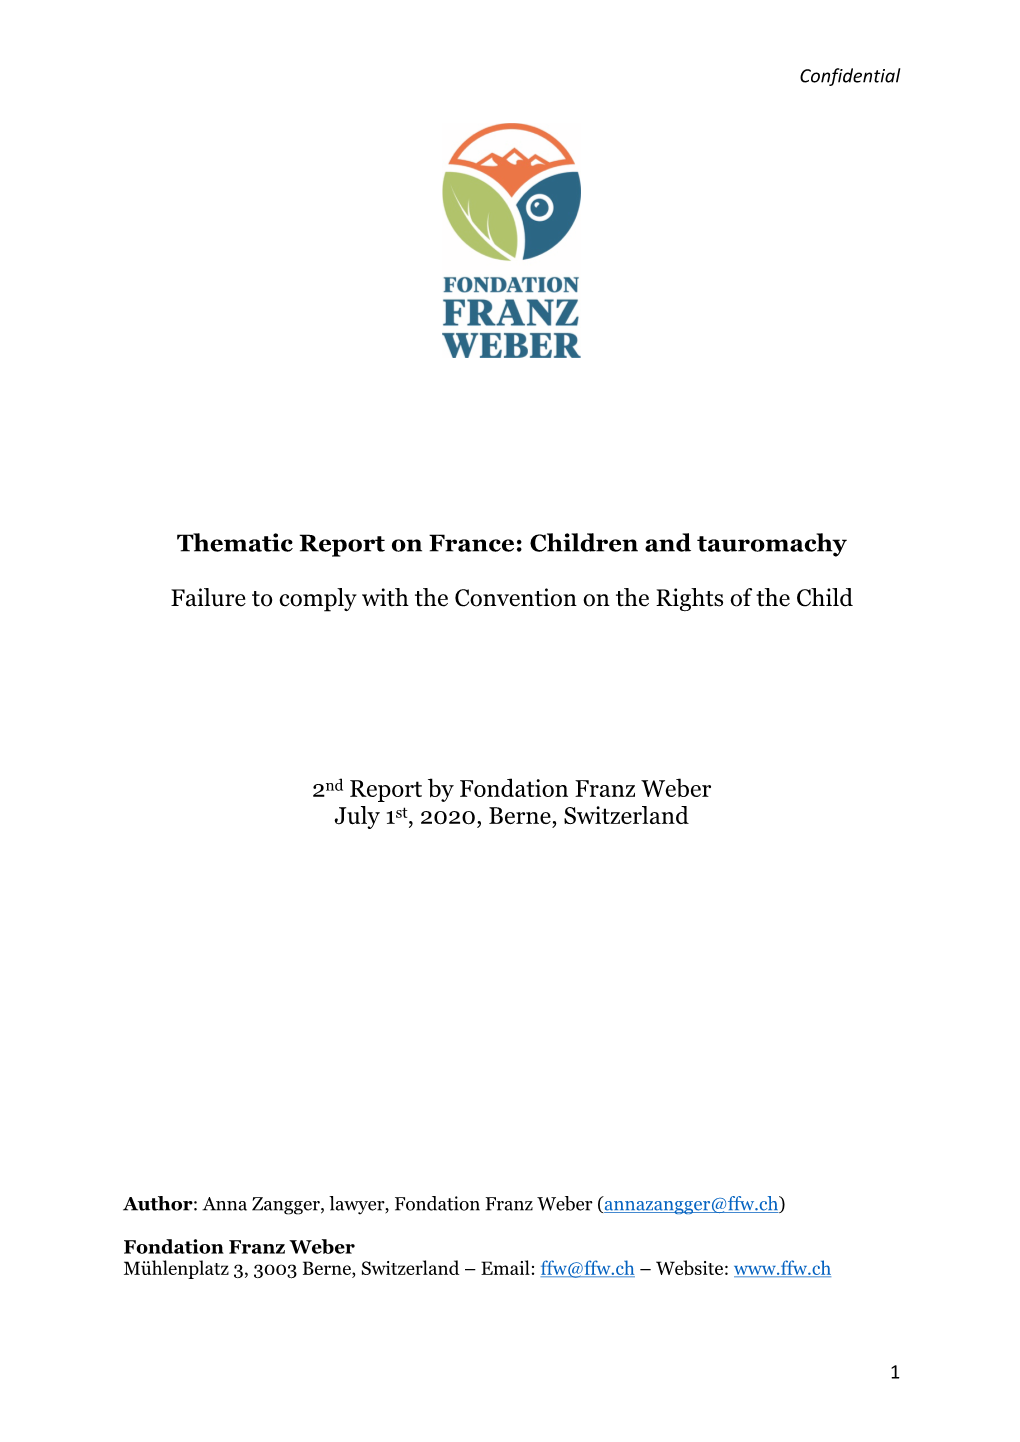 Rapport Au Comité Des Droits De L'enfant FRANCE-Corrida 01.07.2020